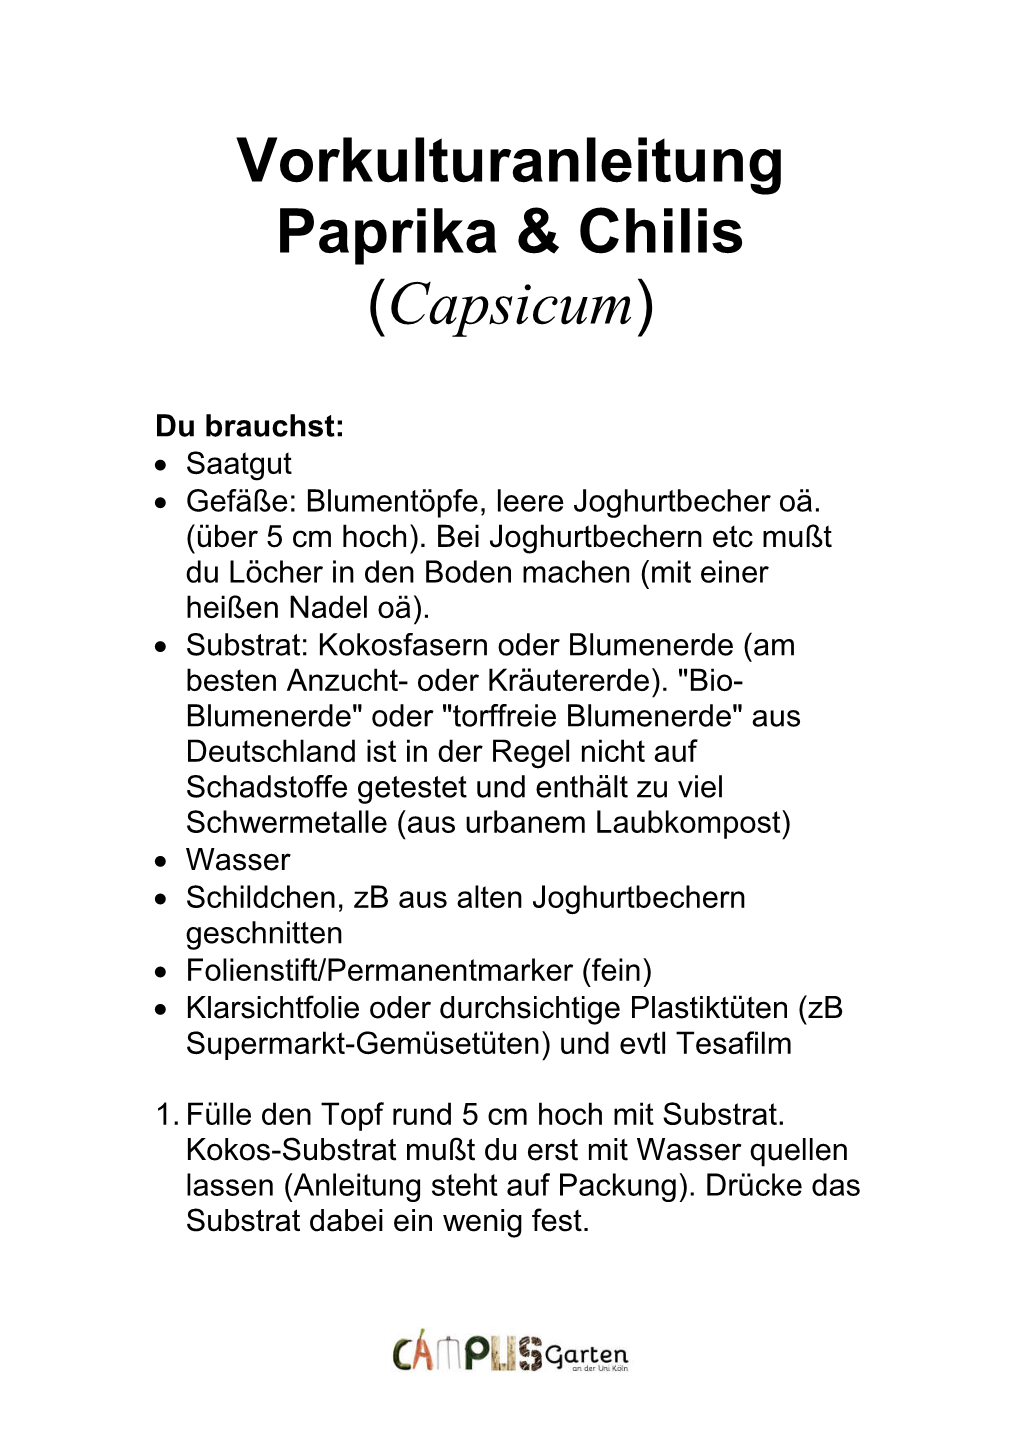 Vorkulturanleitung Paprika & Chilis (Capsicum)